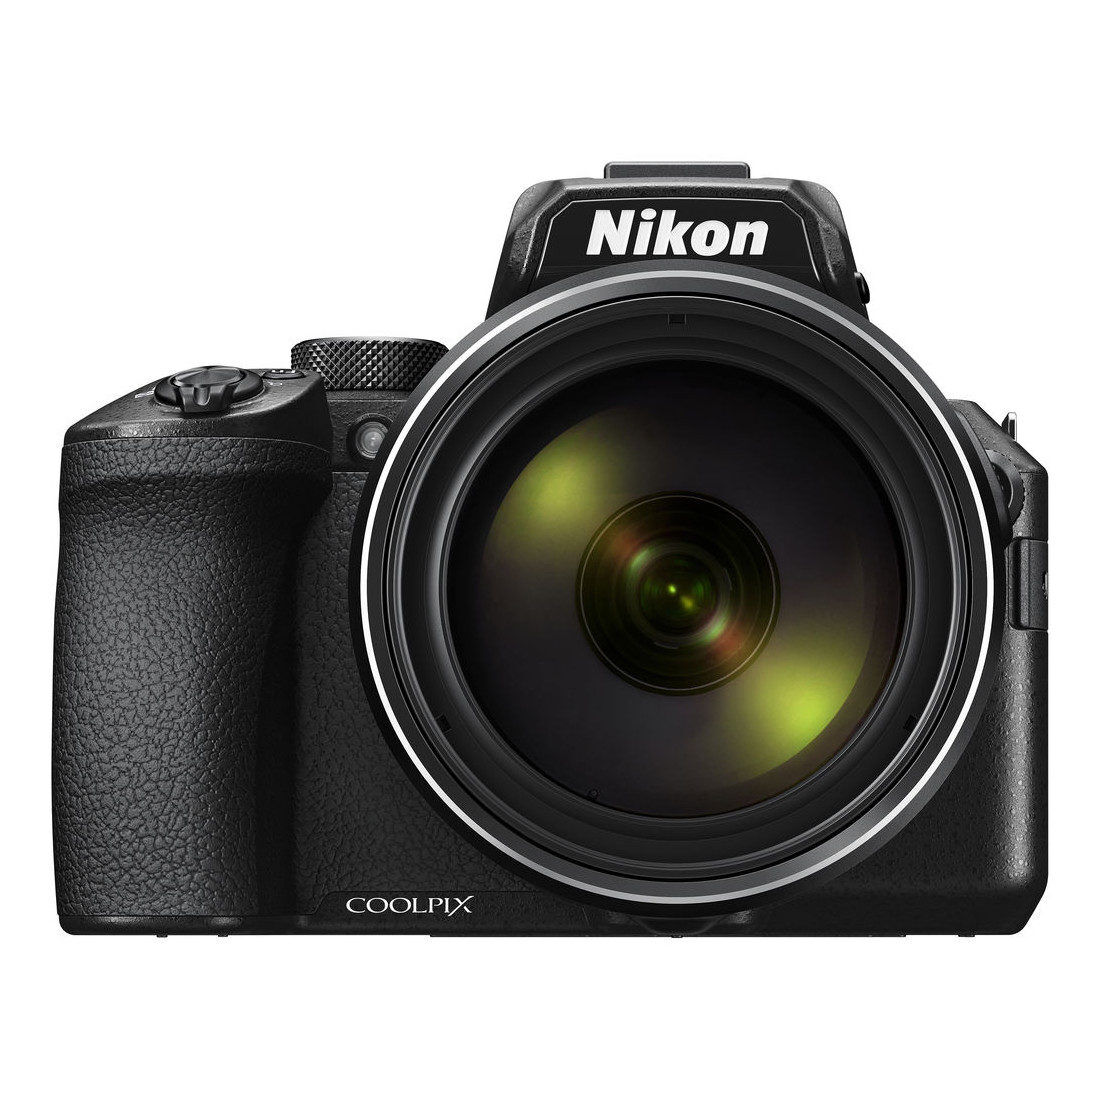 Nikon Coolpix P950 fotocamera compatta- Garanzia presso centri ufficiali in Italia